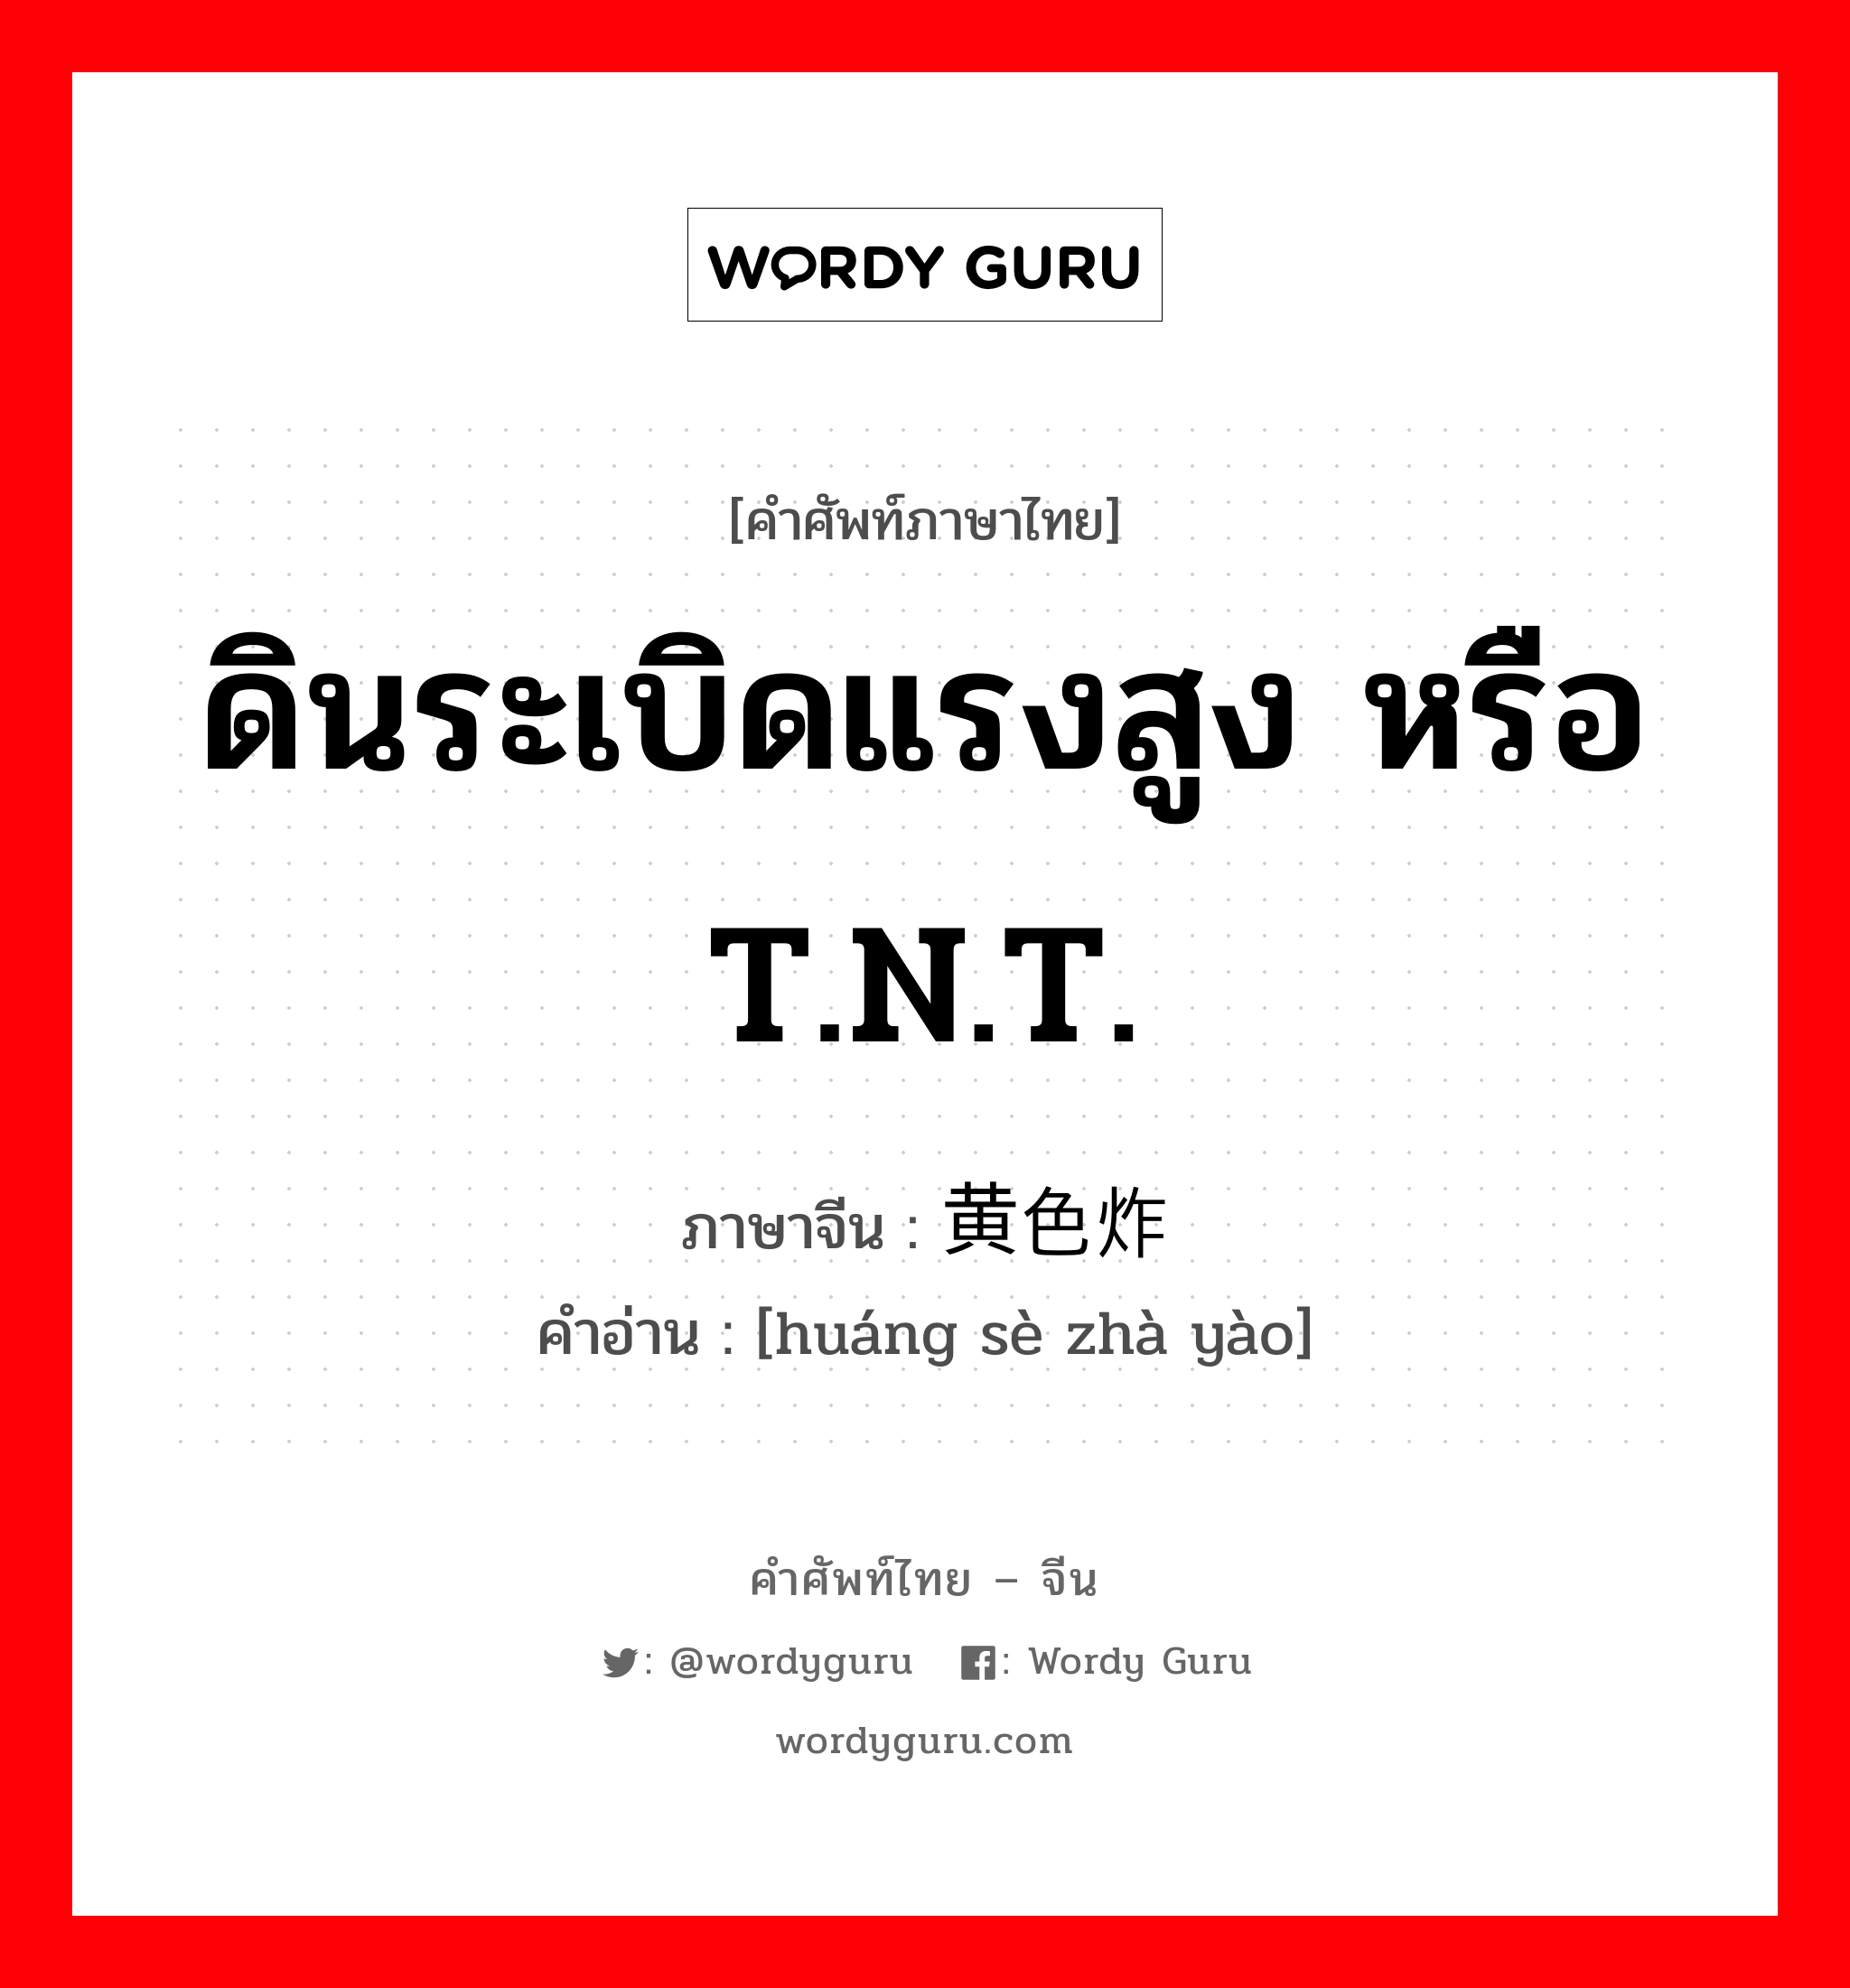 ดินระเบิดแรงสูง หรือ T.N.T. ภาษาจีนคืออะไร, คำศัพท์ภาษาไทย - จีน ดินระเบิดแรงสูง หรือ T.N.T. ภาษาจีน 黄色炸药 คำอ่าน [huáng sè zhà yào]